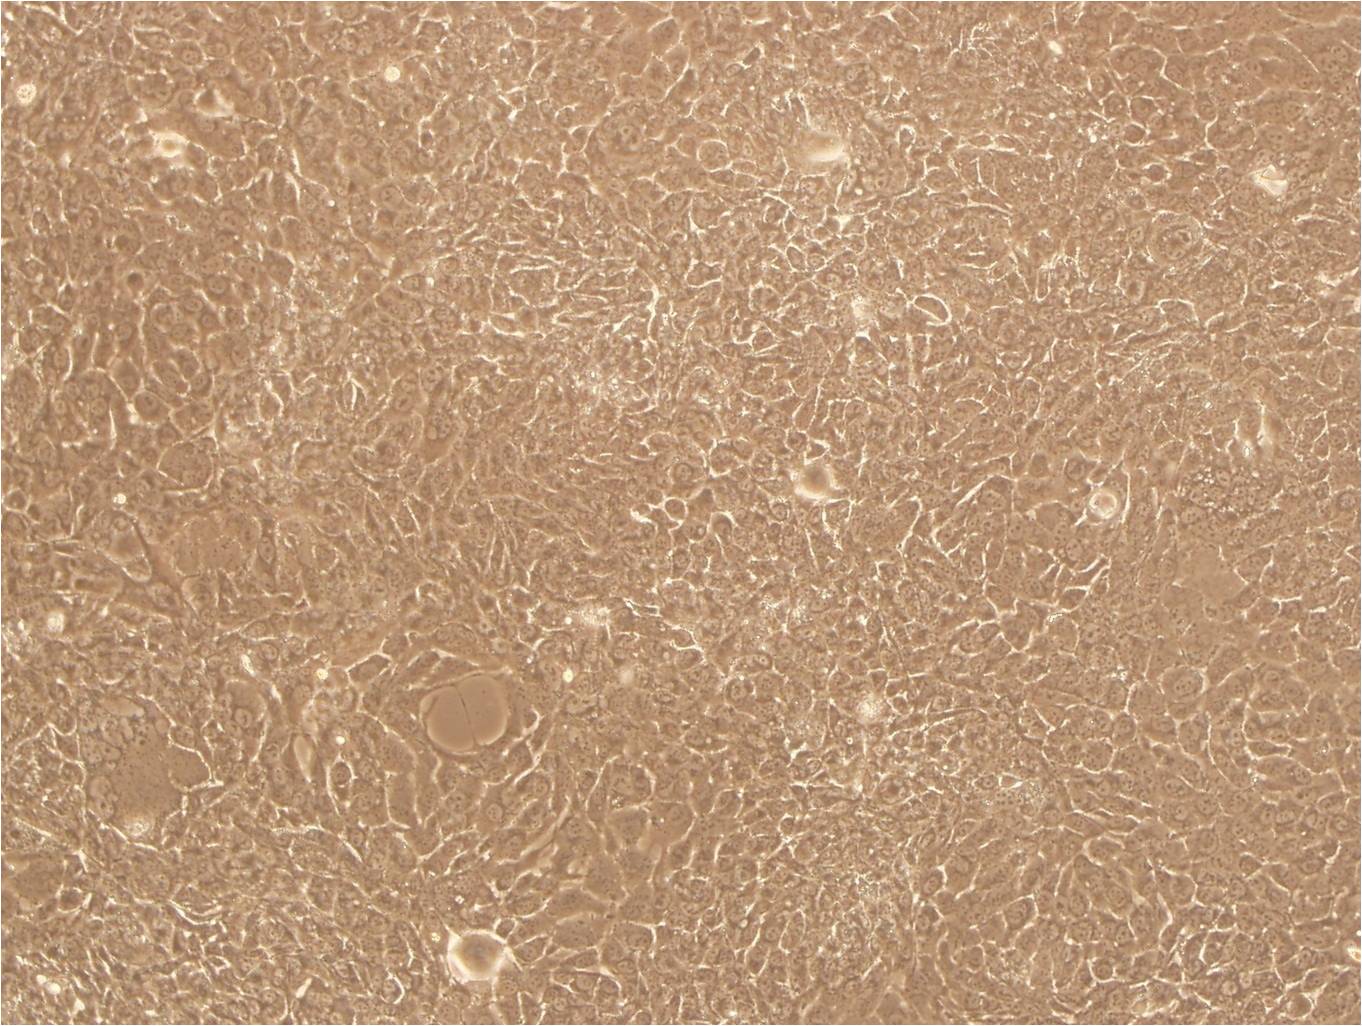 Sp2/0-Ag14:小鼠骨髓瘤复苏细胞(提供STR鉴定图谱)